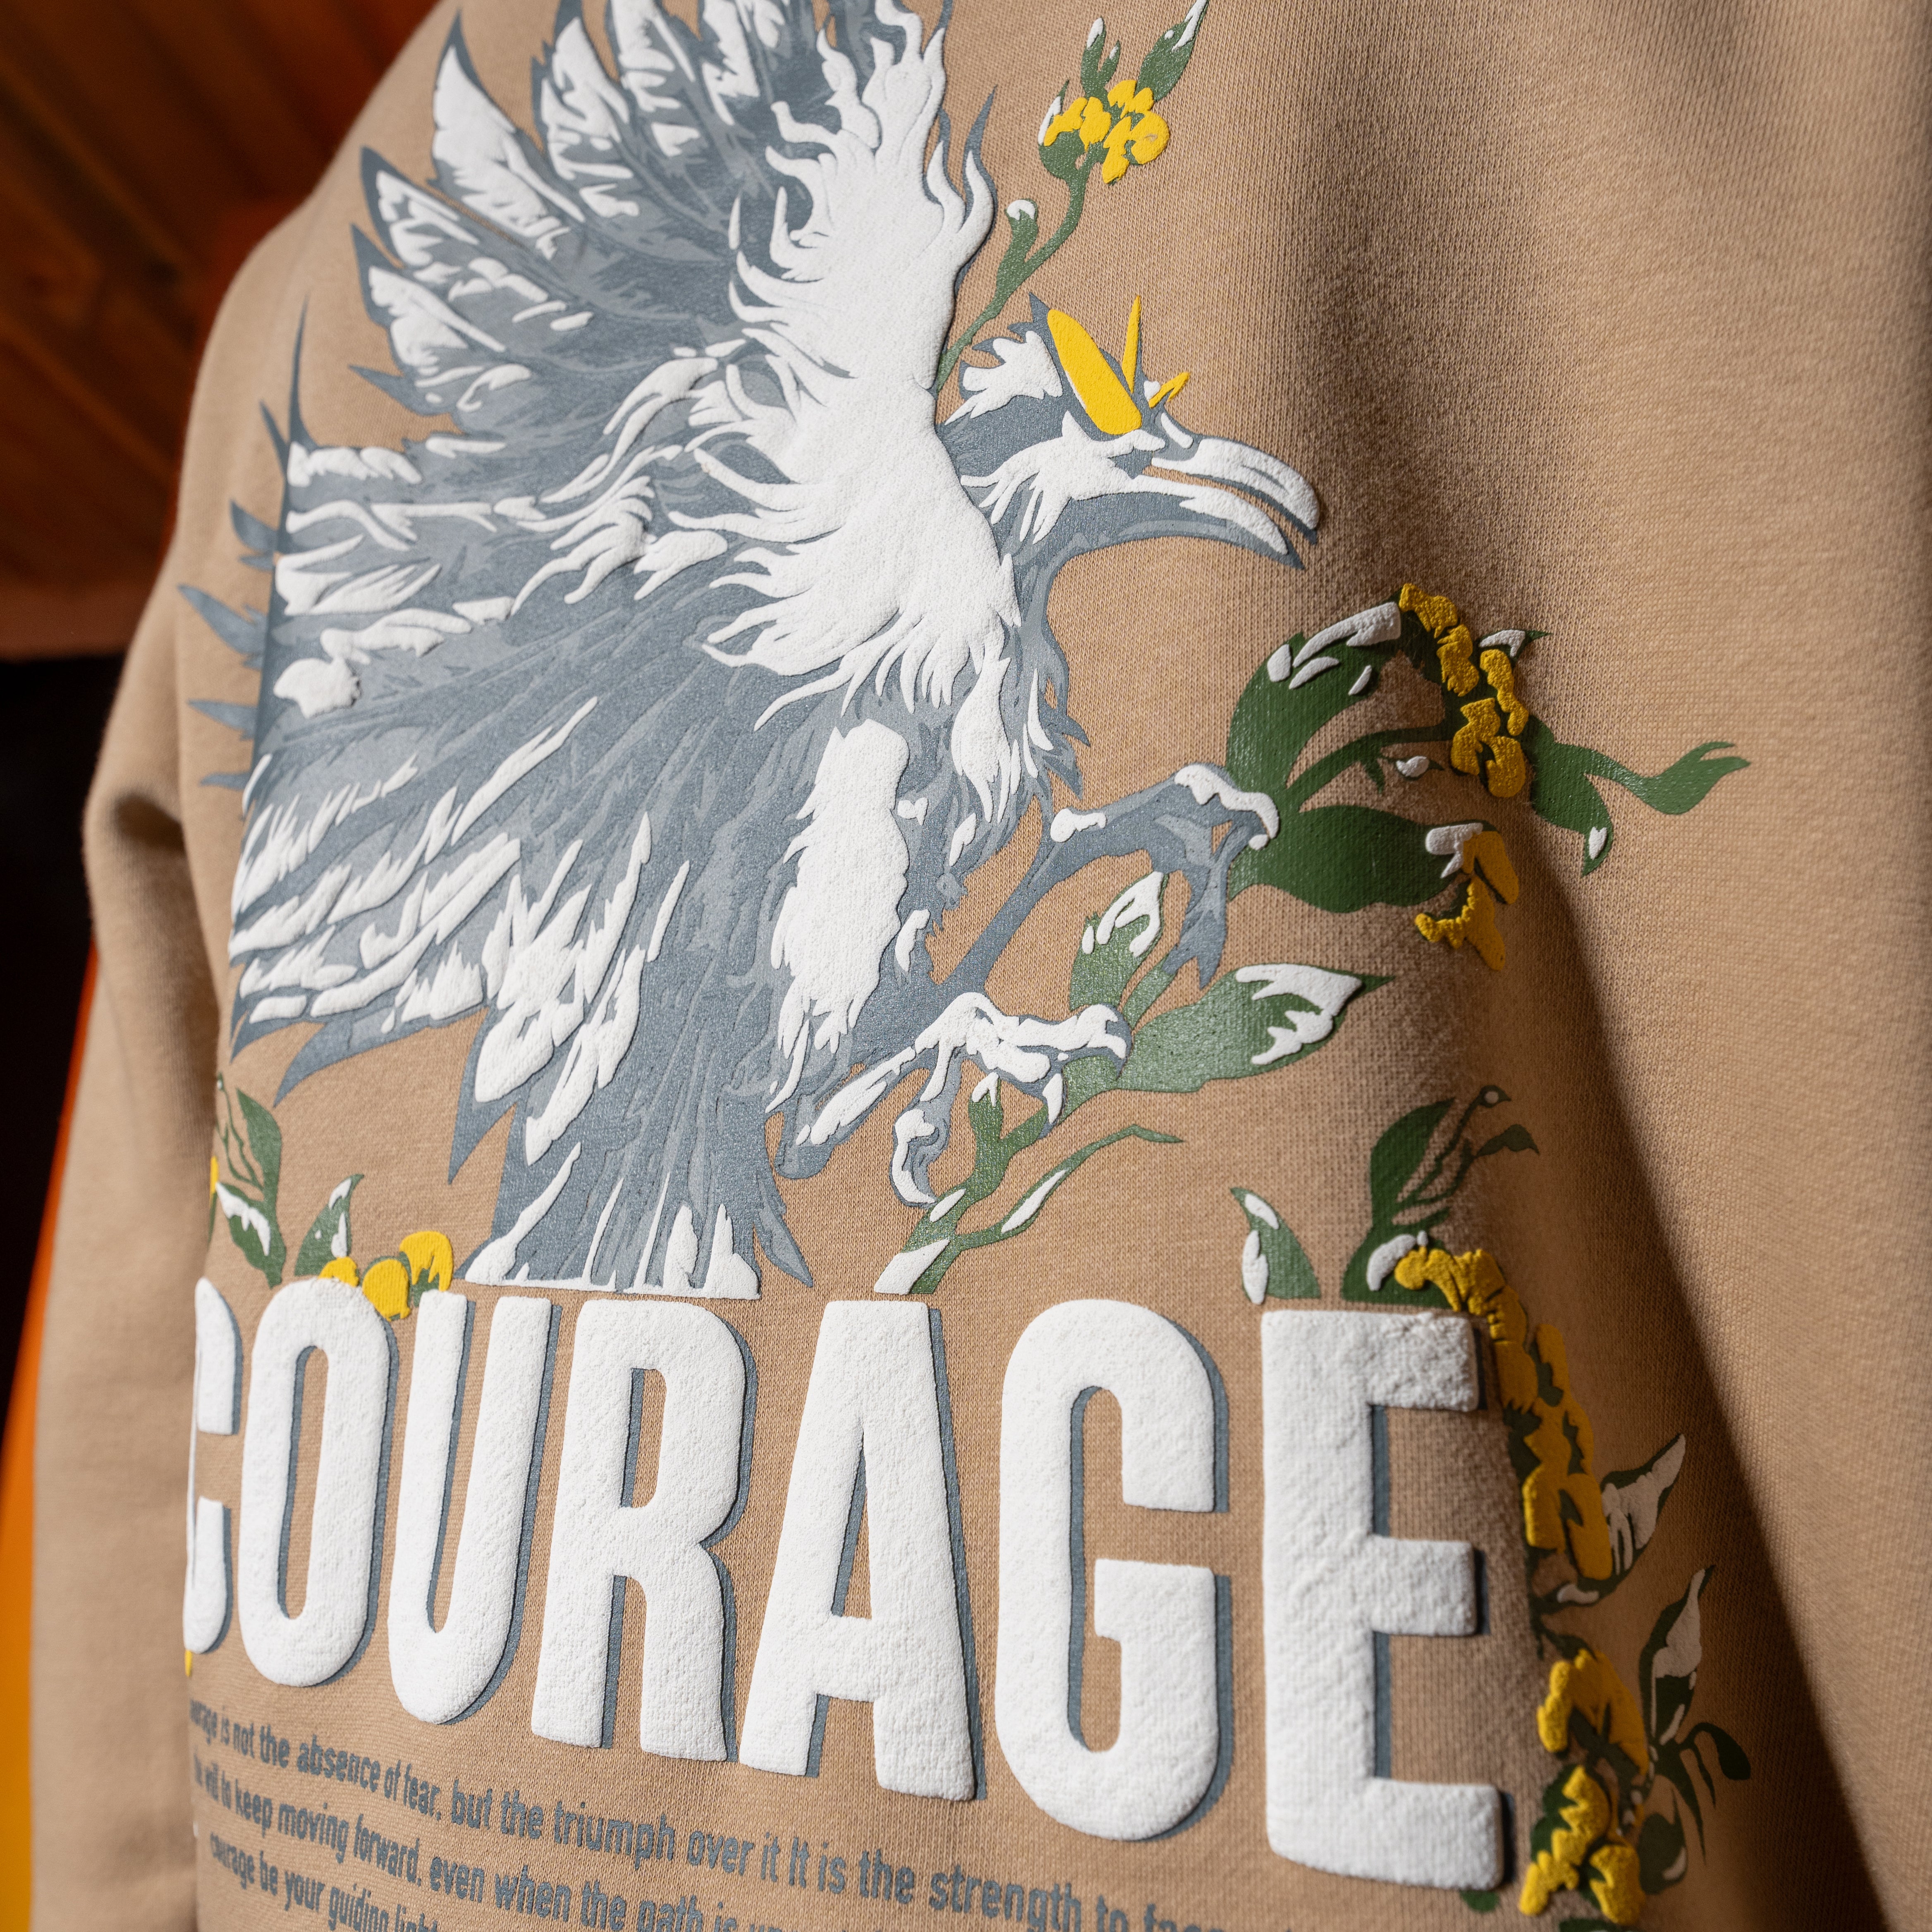 Courage Beige Sweatshirt